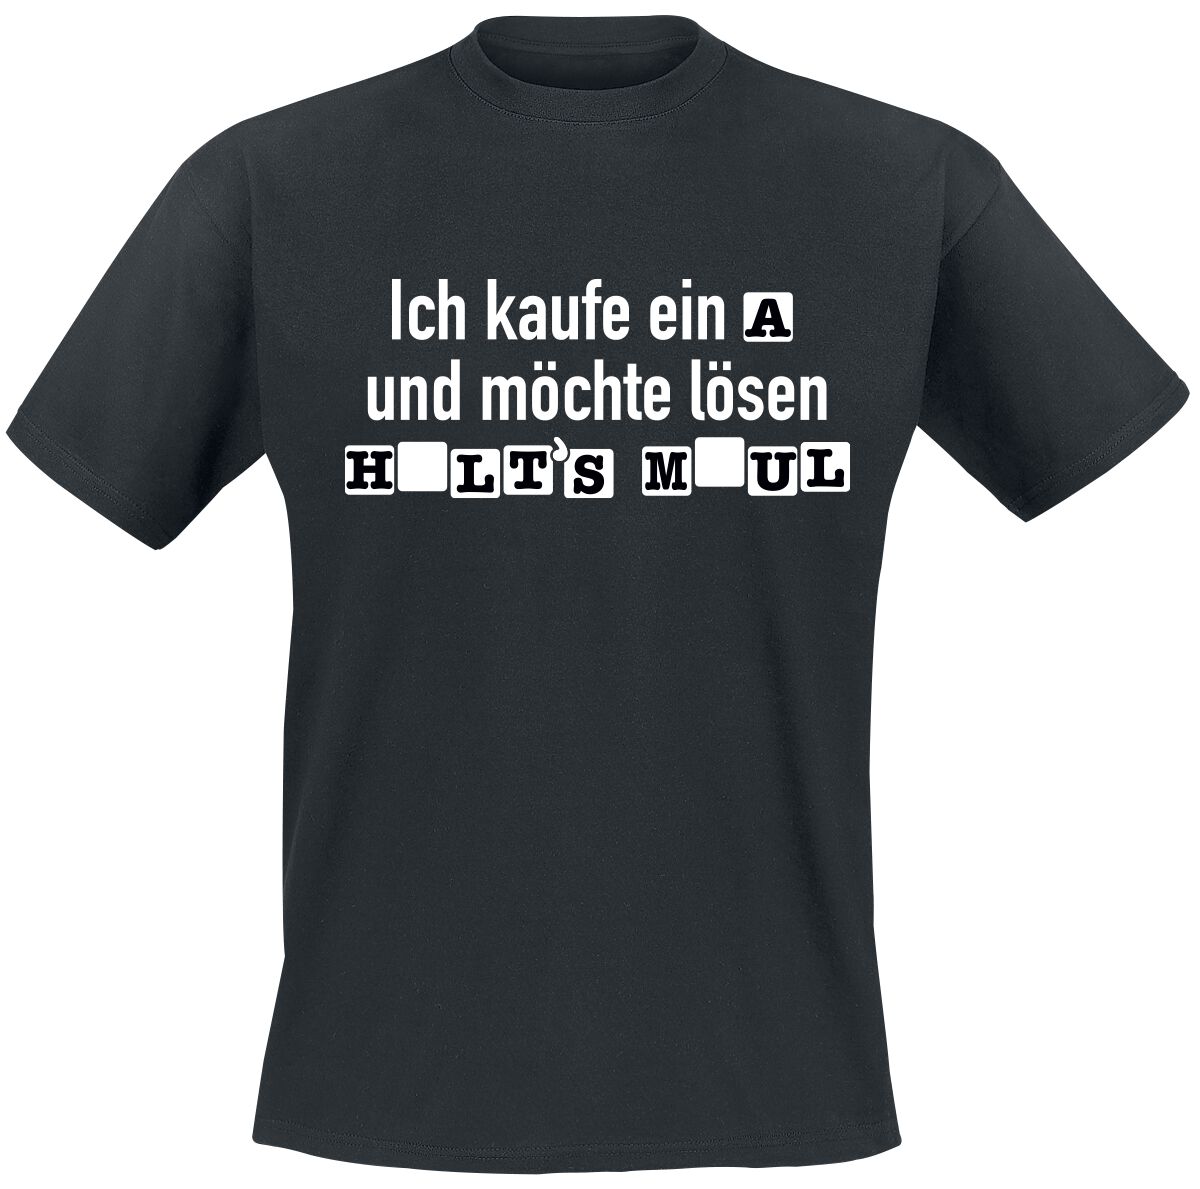 Sprüche T-Shirt - Ich kaufe ein A und möchte lösen - S bis 4XL - für Männer - Größe L - schwarz